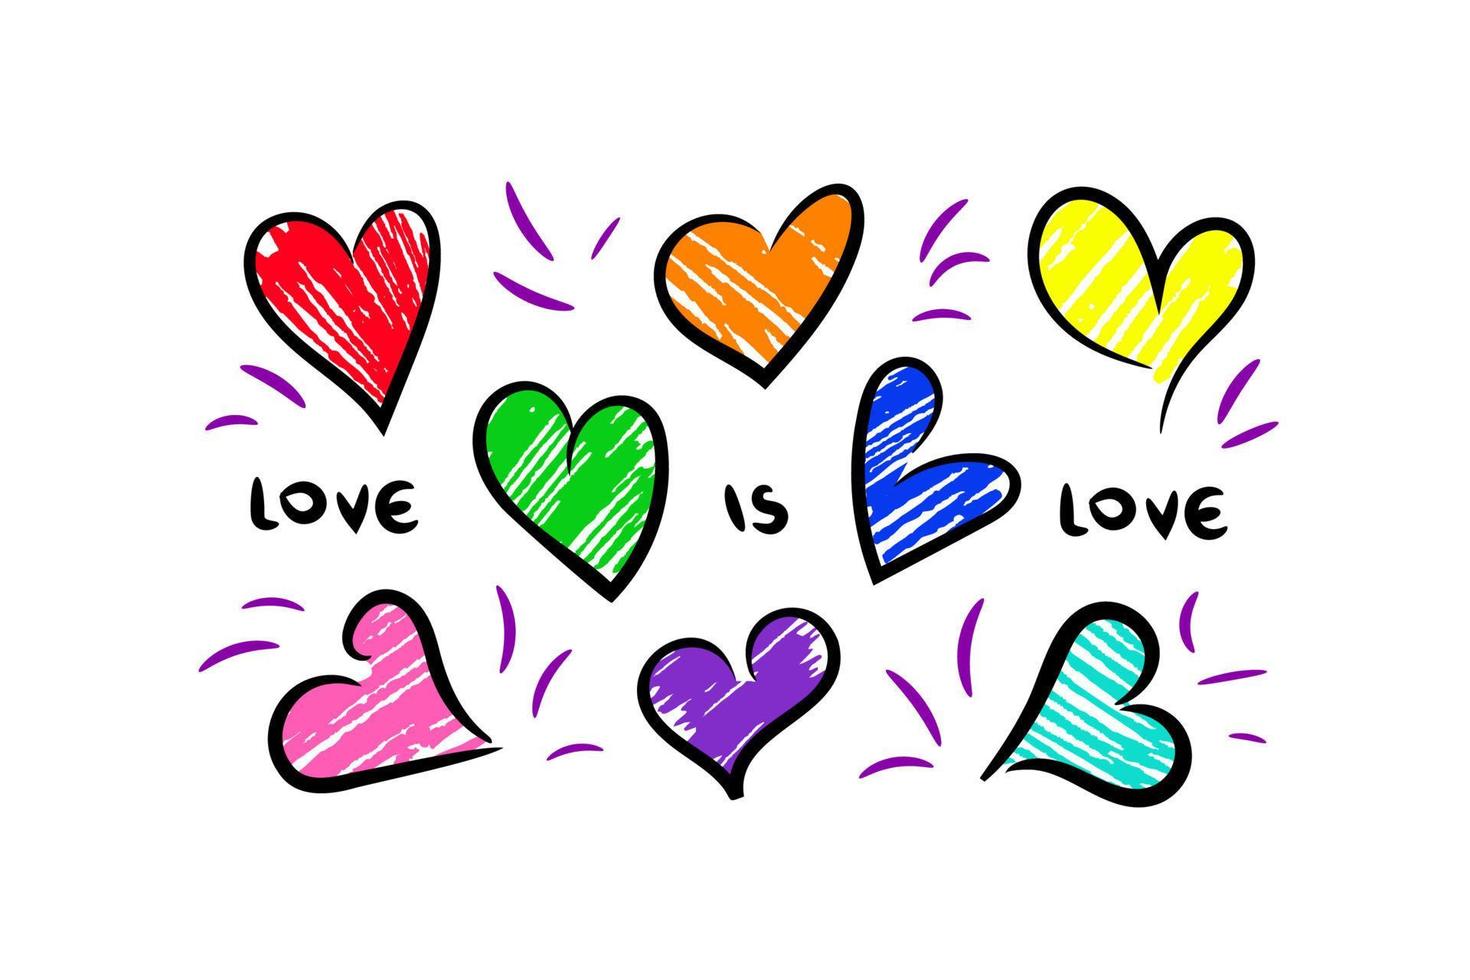 åtta oärlig hjärtan färgad förbi markör eller känt dricks penna i olika färger av regnbåge, plus rosa och ljusblå, slogan kärlek är kärlek. lgbtqa gemenskap stolthet färger, valentine kort, plakat, klistermärke etc. vektor